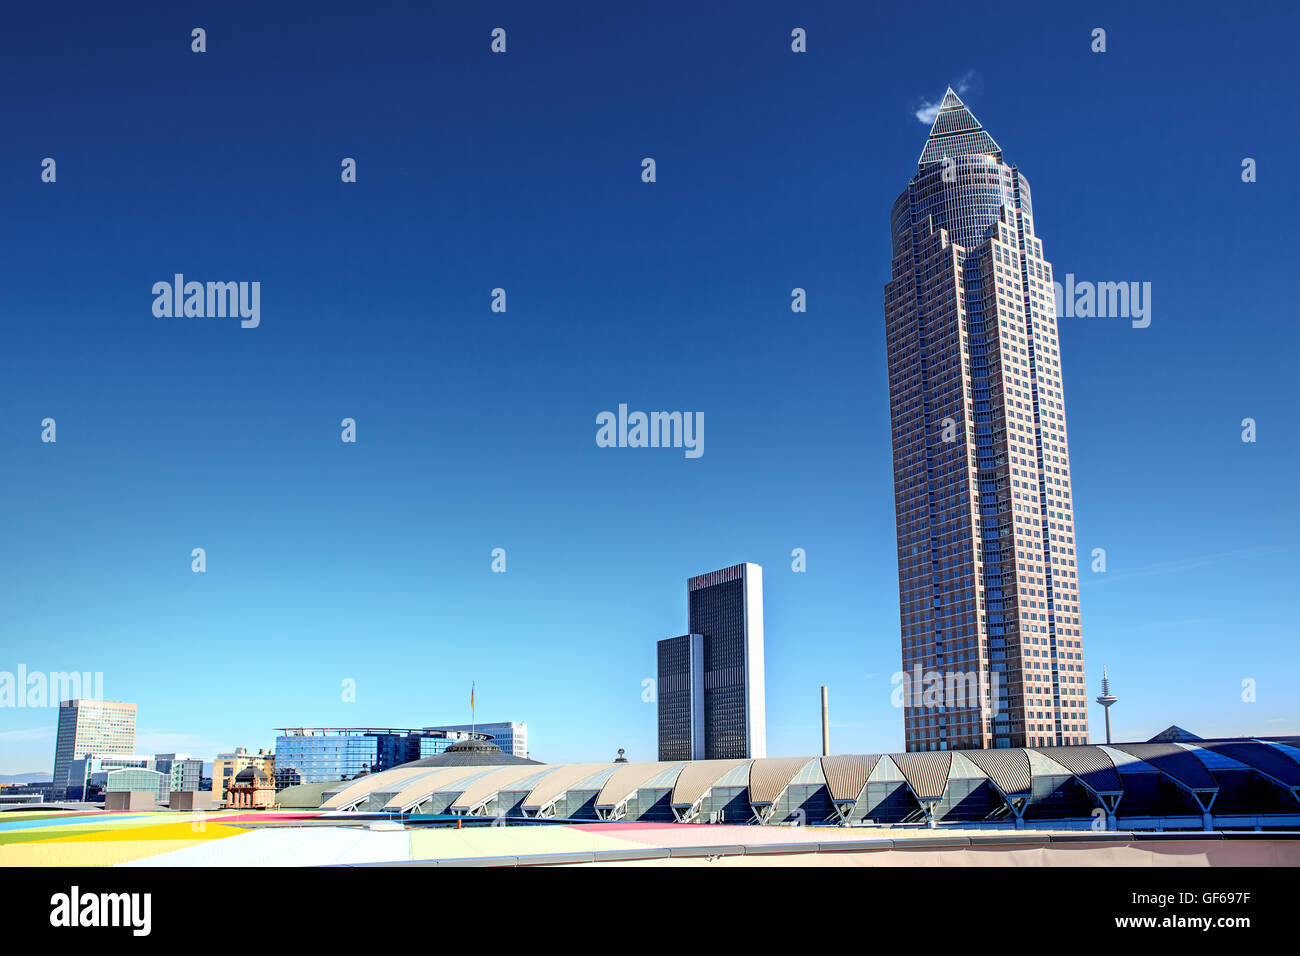 The City of Frankfurt on the Main, Germany Stock Photo